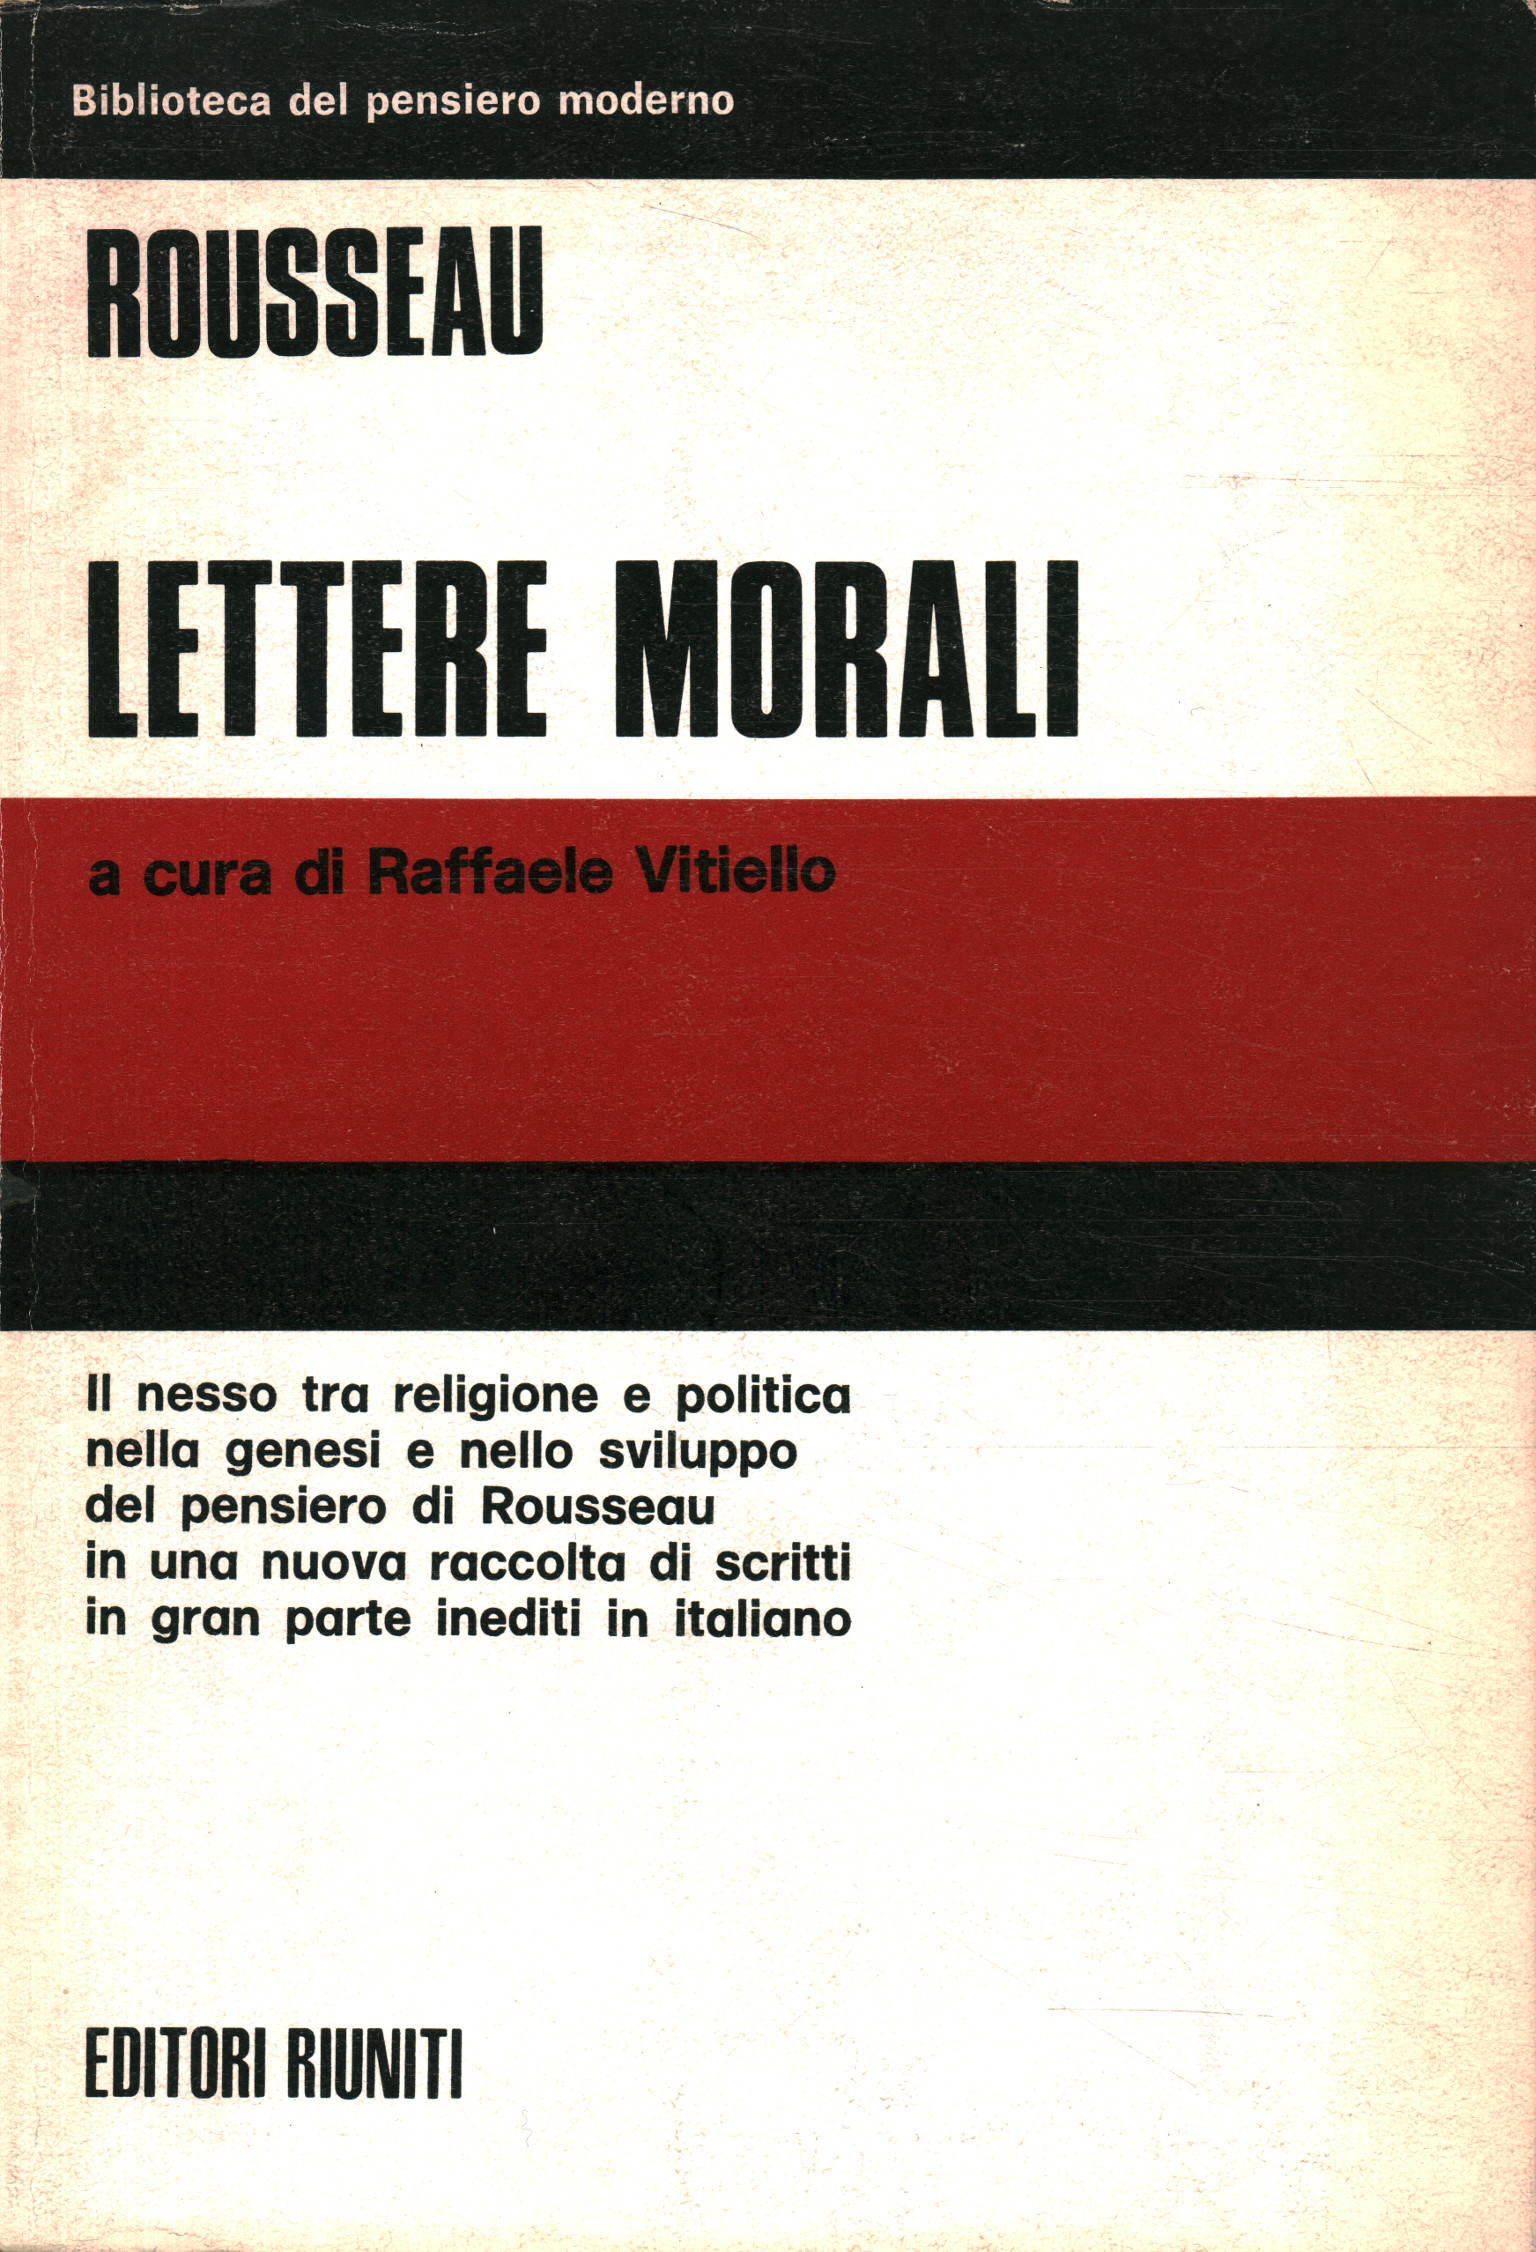 Moral letters